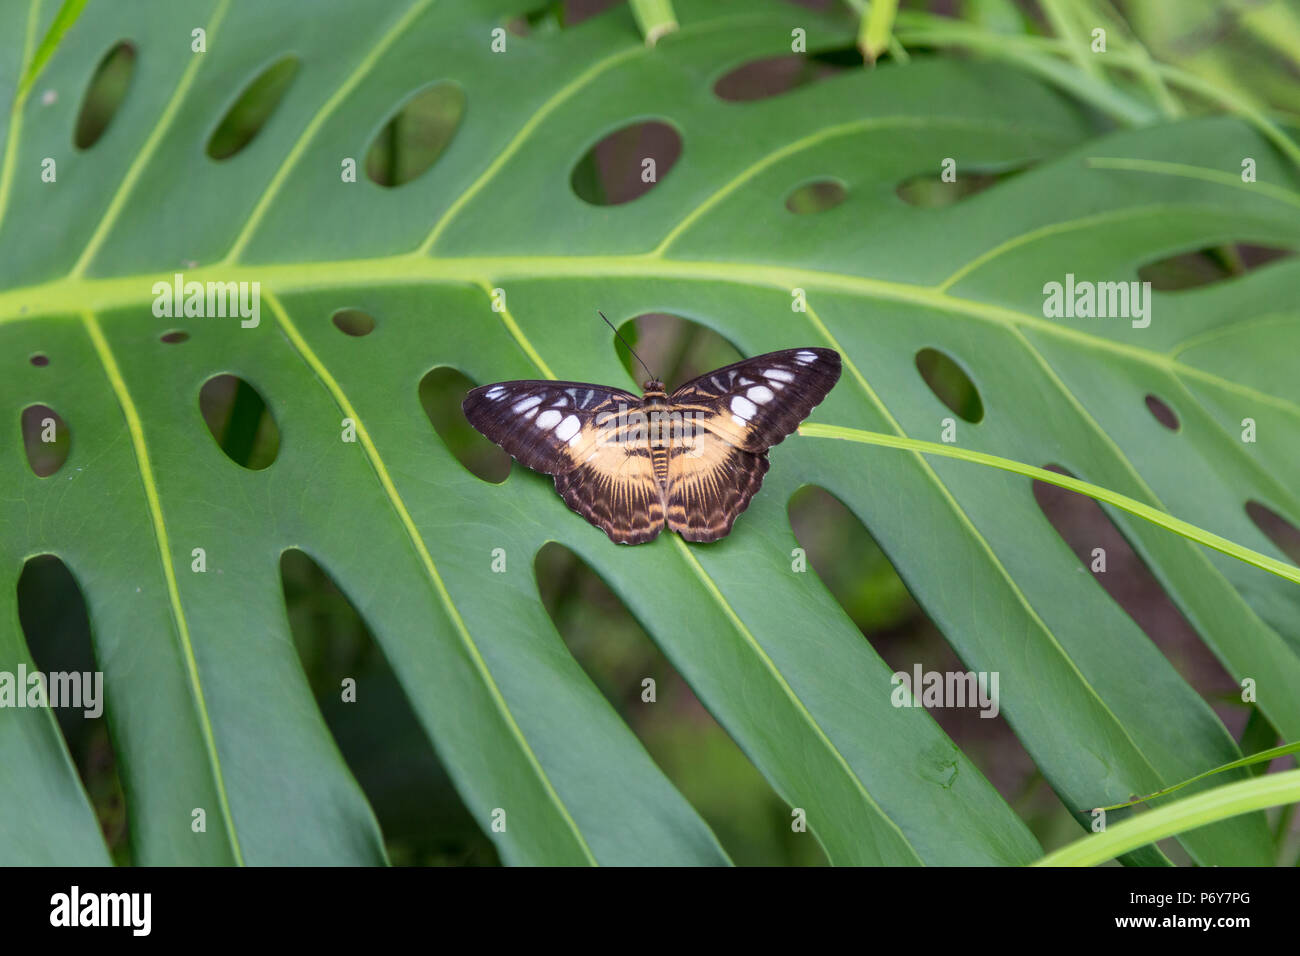 Brown butterfly seduto su una grande pianta verde foglia. Scatto dall'alto. Macro Foto Stock